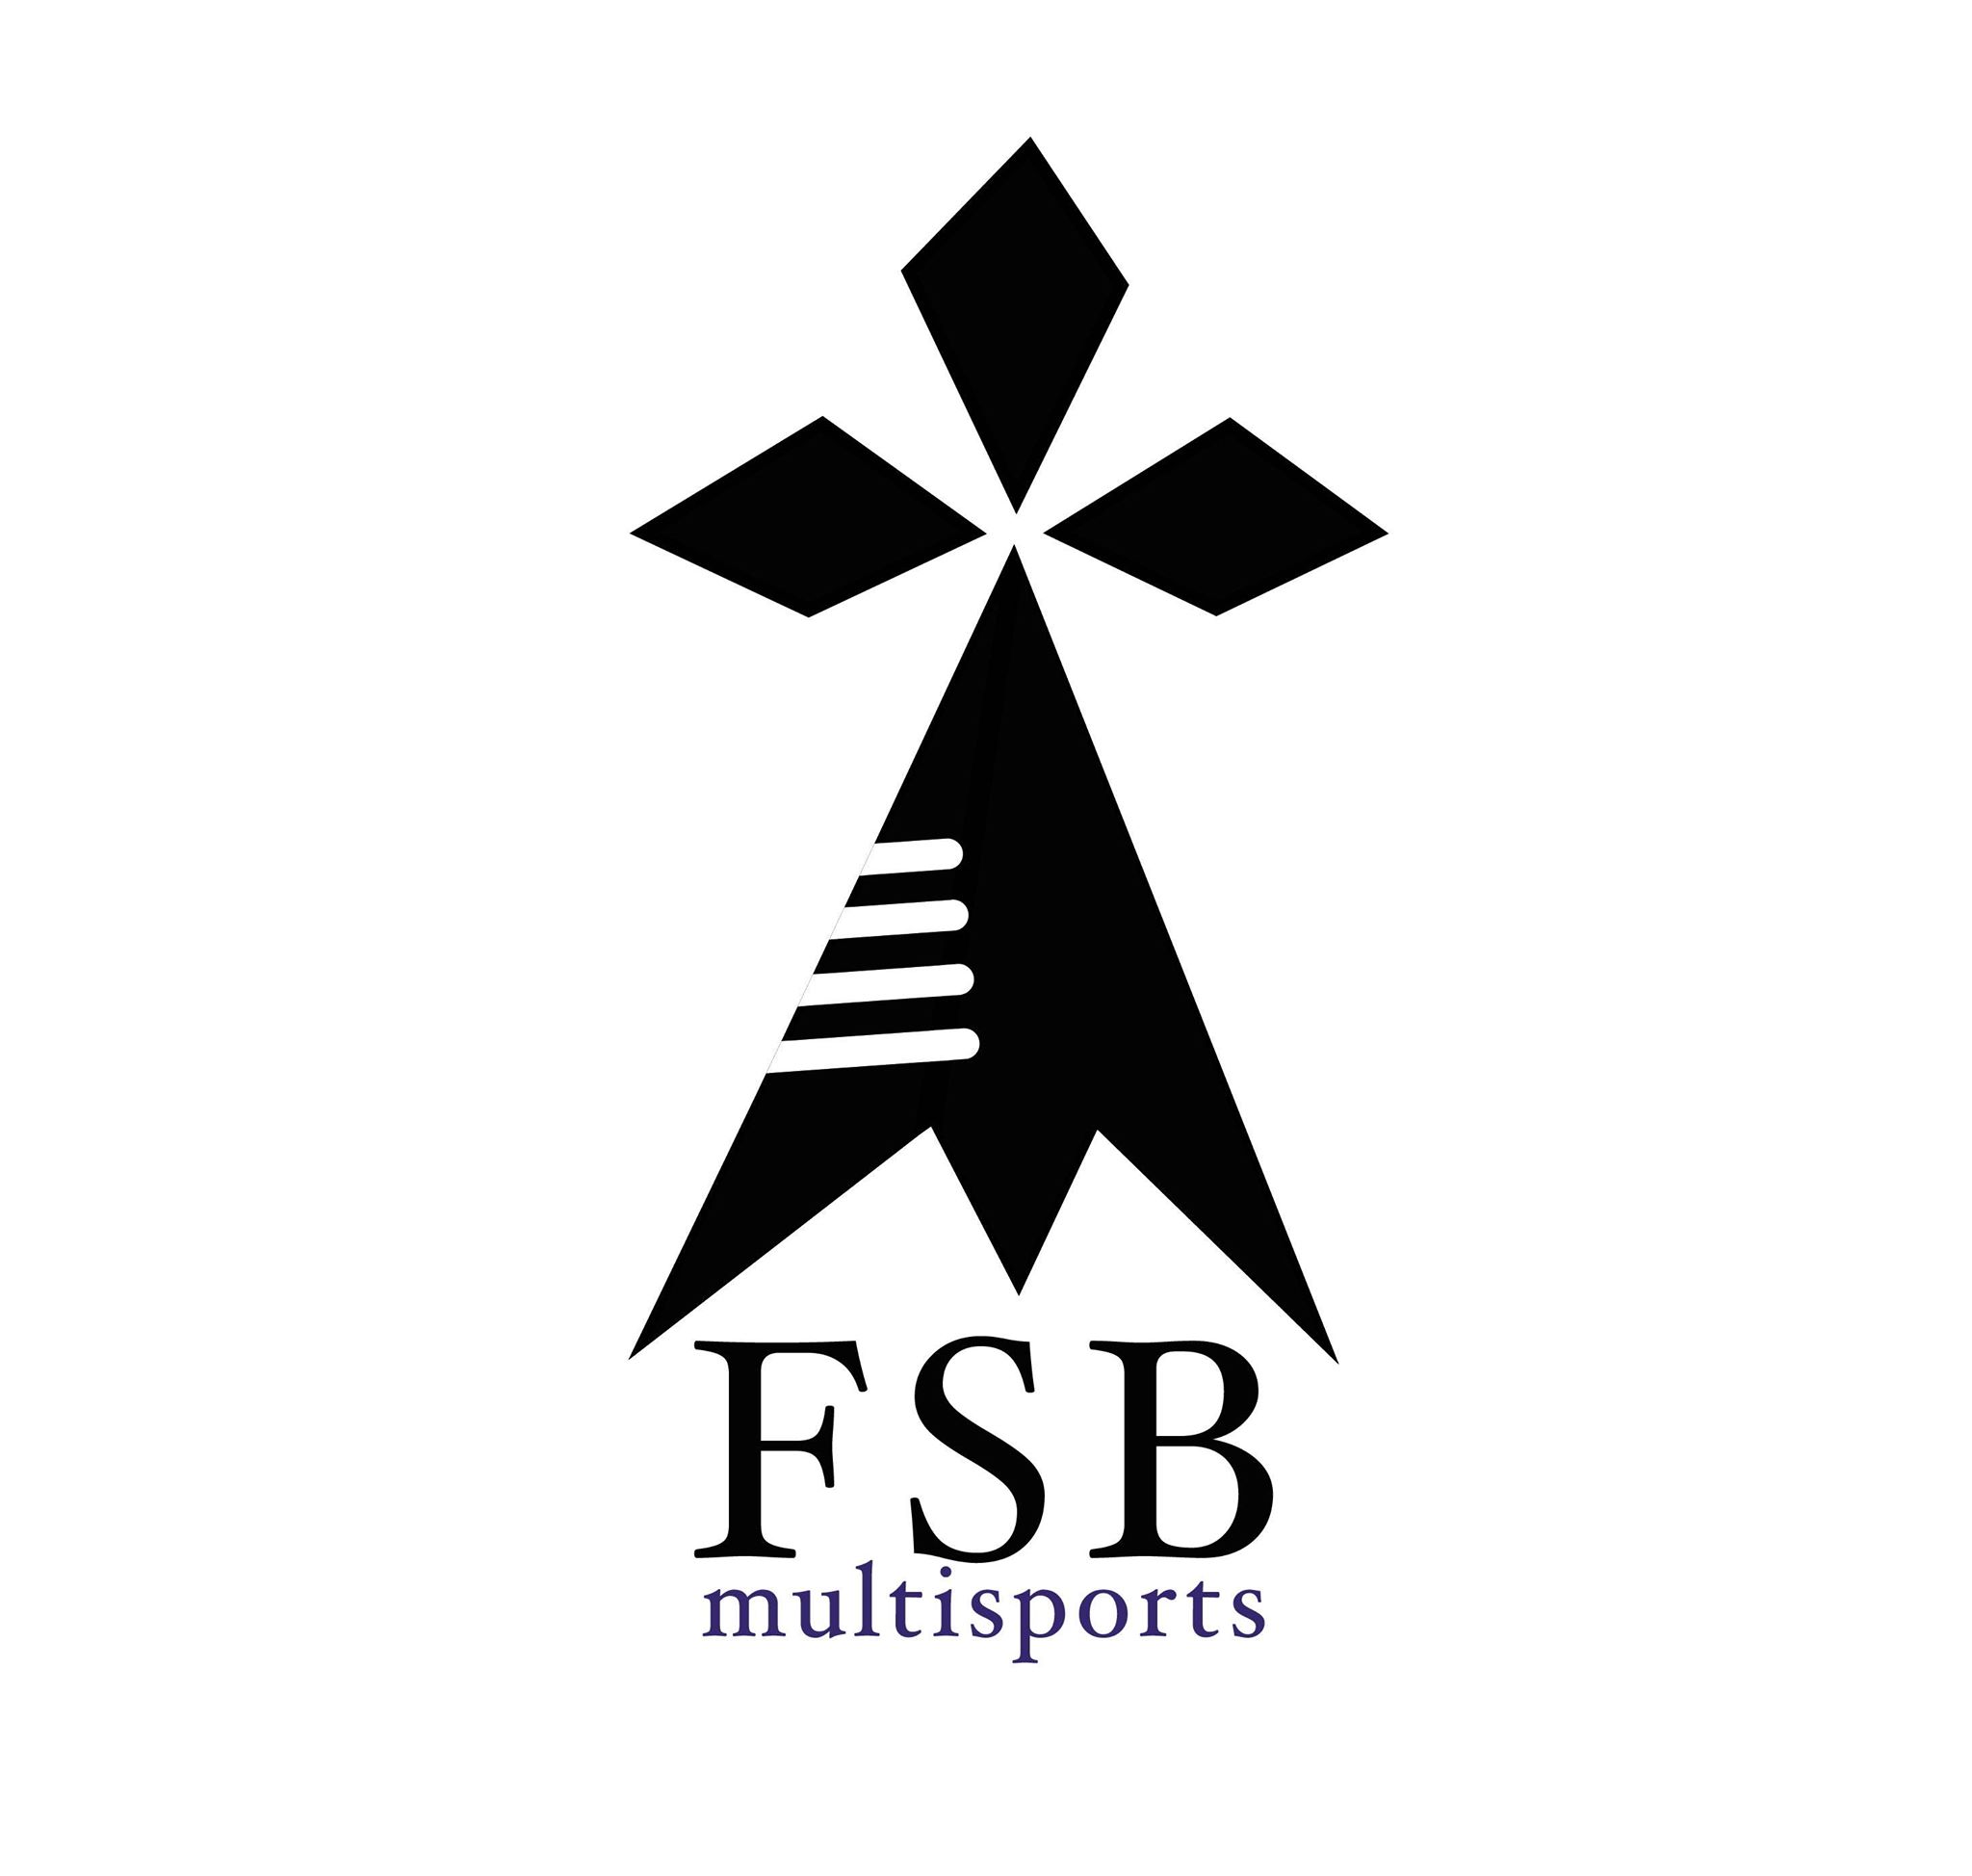 FSB multisports